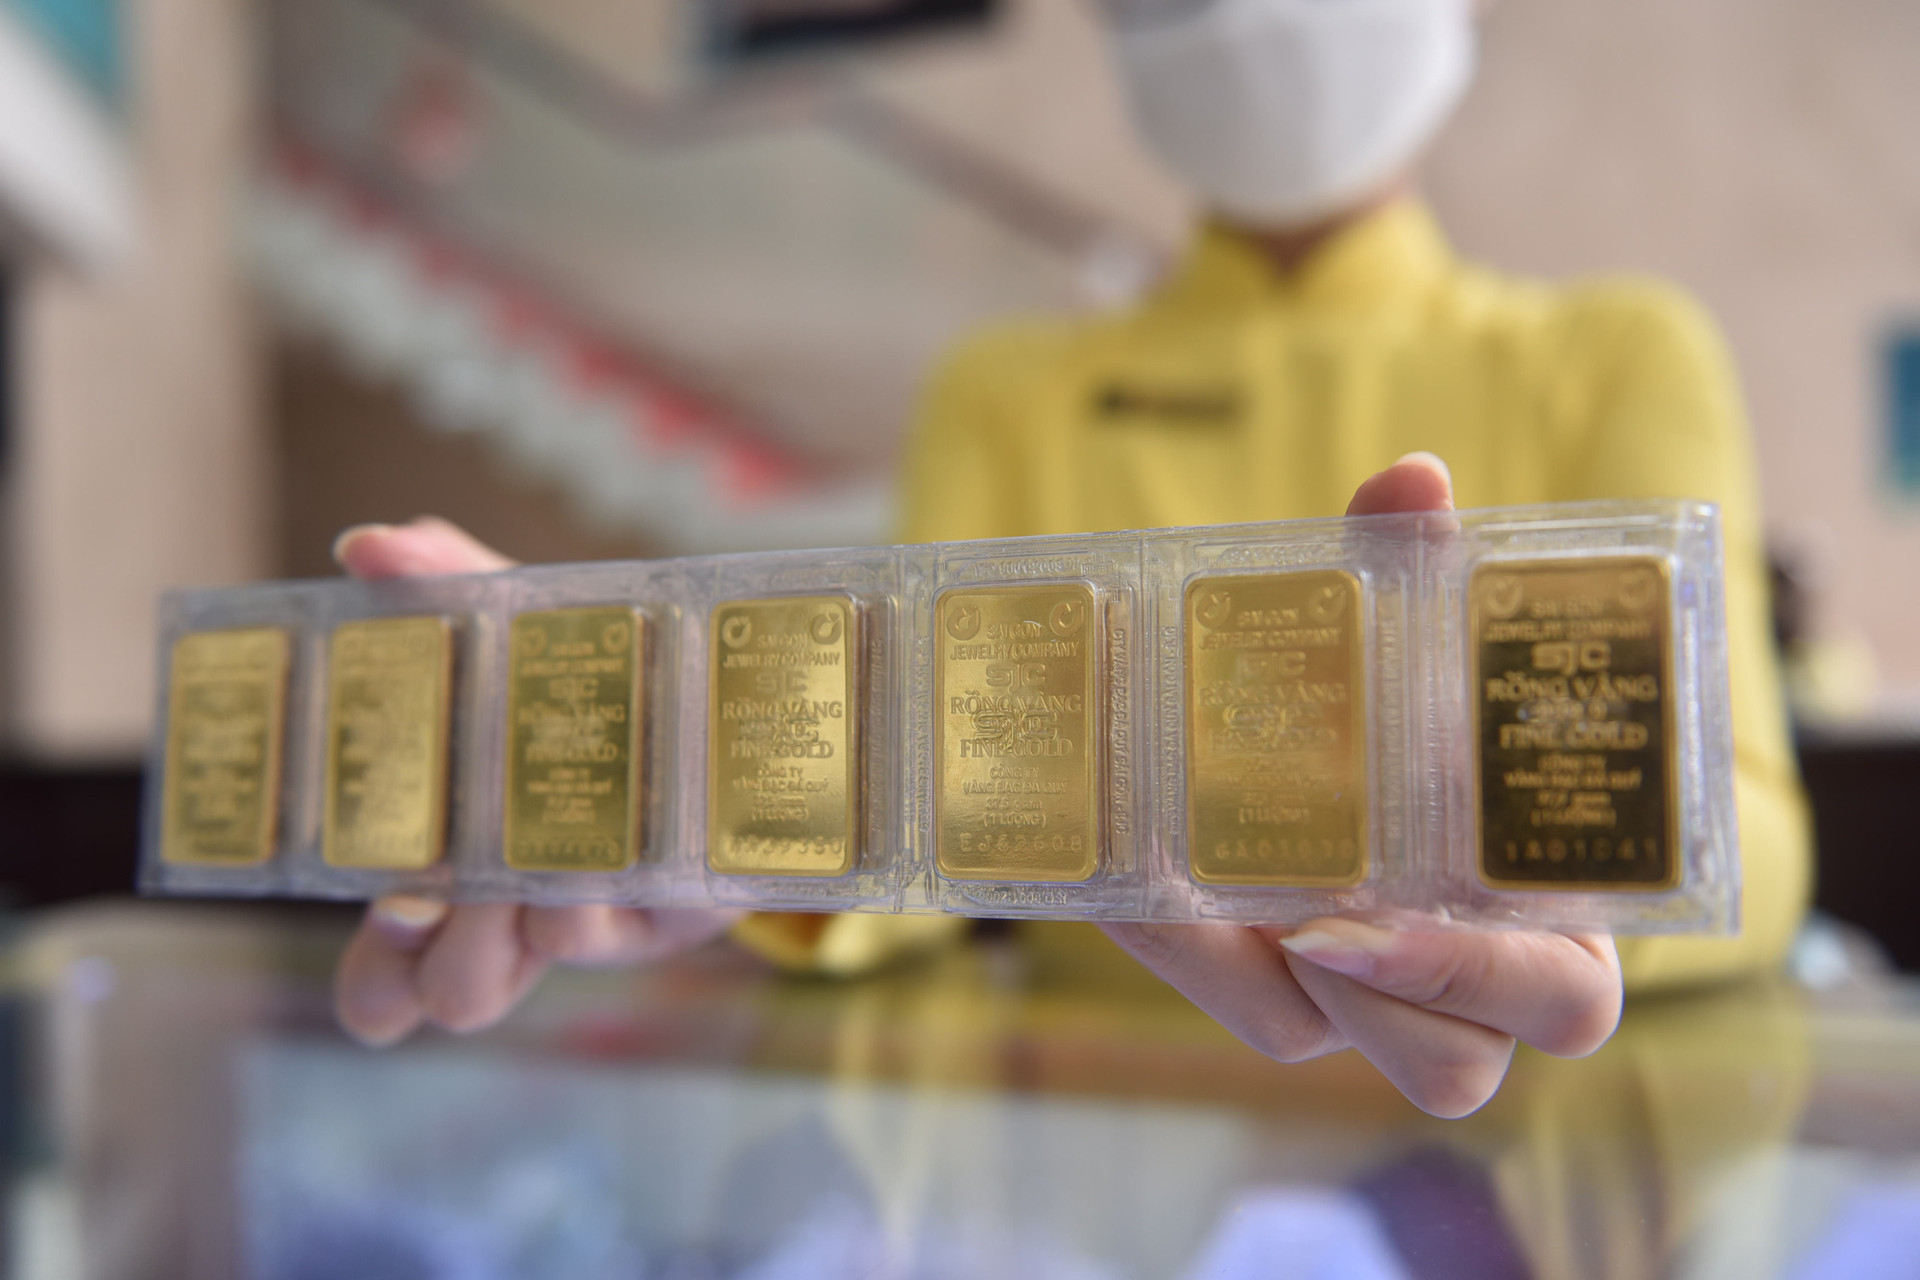 Theo NHNN, việc xóa bỏ cơ chế Nhà nước độc quyền sản xuất vàng miếng sẽ phù hợp với kinh nghiệm quốc tế, tăng cung vàng miếng trên thị trường, giải quyết được vấn đề chênh lệch giá - Ảnh: NGỌC PHƯỢNG 